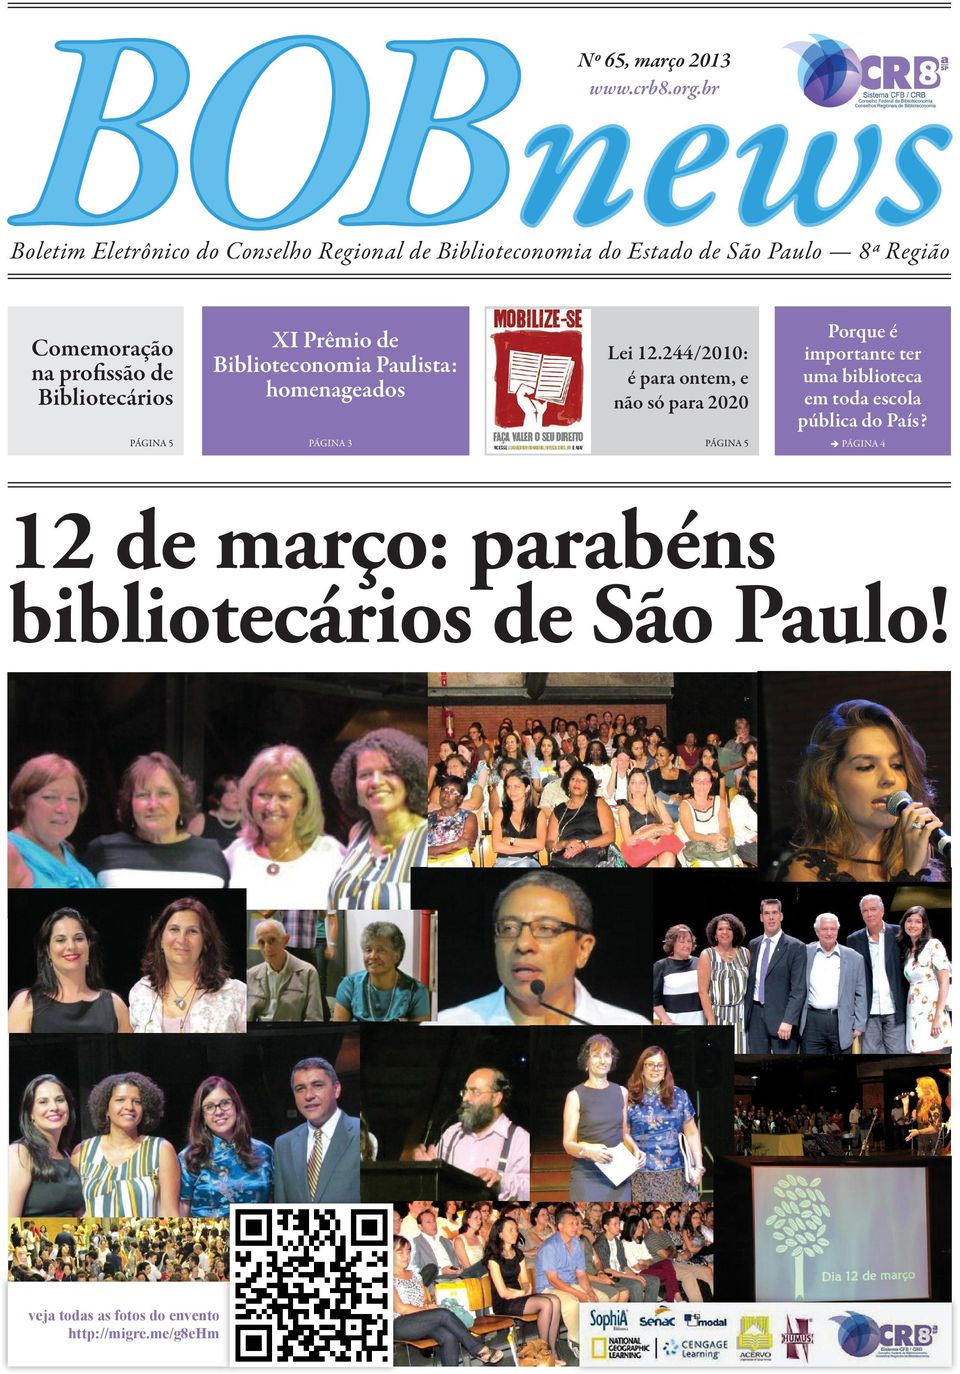 profissão de Bibliotecários XI Prêmio de Biblioteconomia Paulista: homenageados PÁGINA 5 PÁGINA 3 Lei 12.